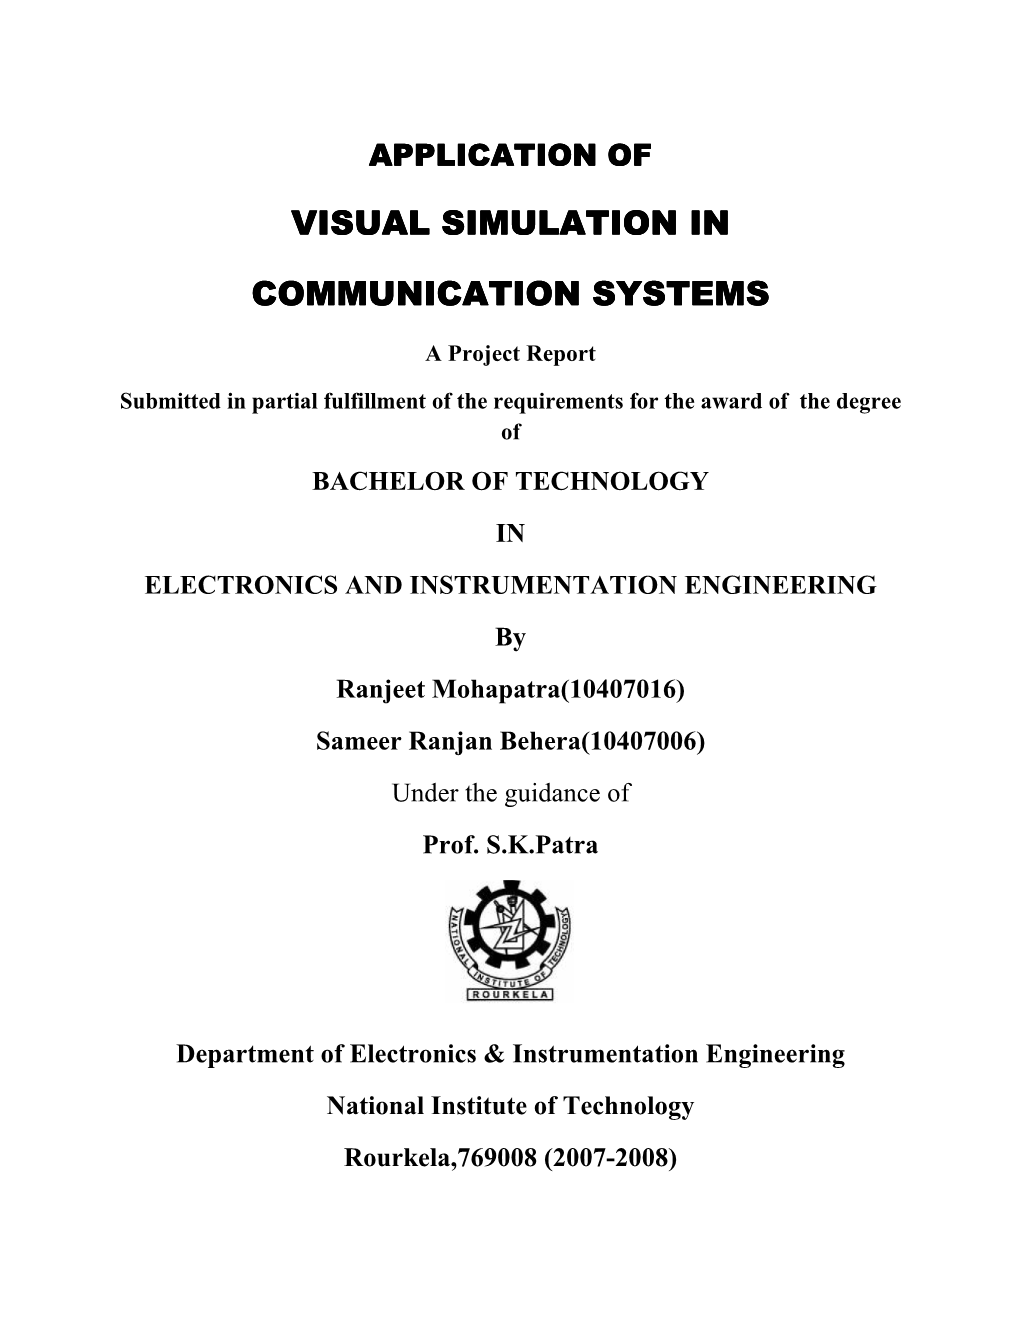 Visual Simulation in Visual Simulation in Communication